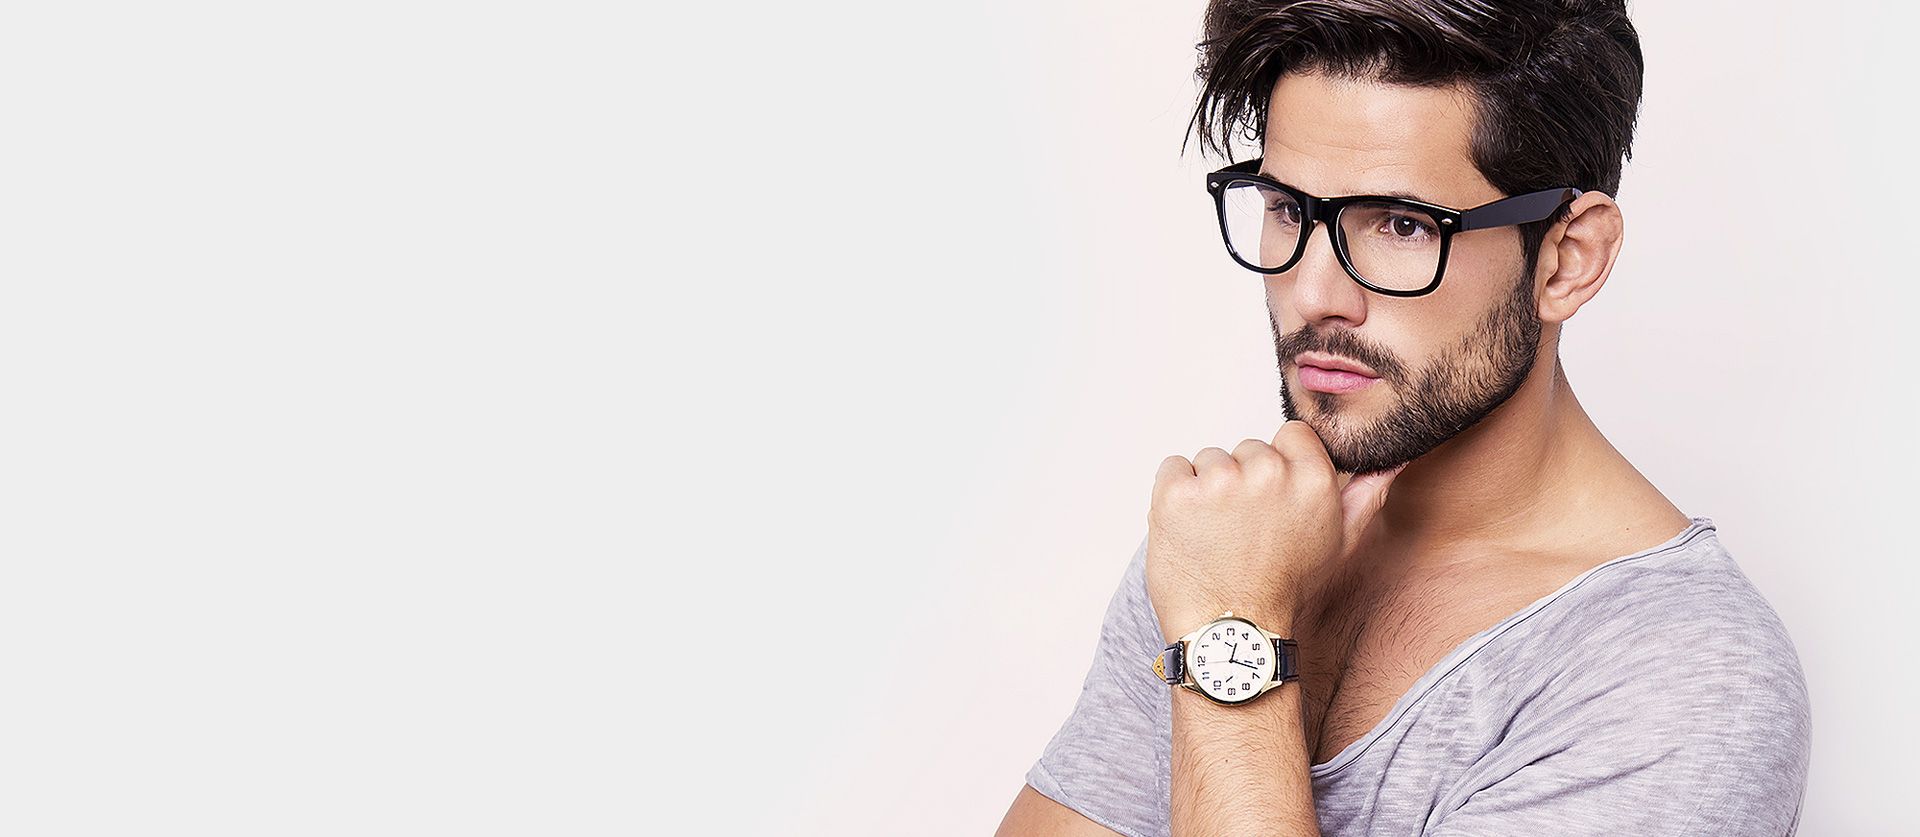 Ein Mann mit Brille zeigt Uhr